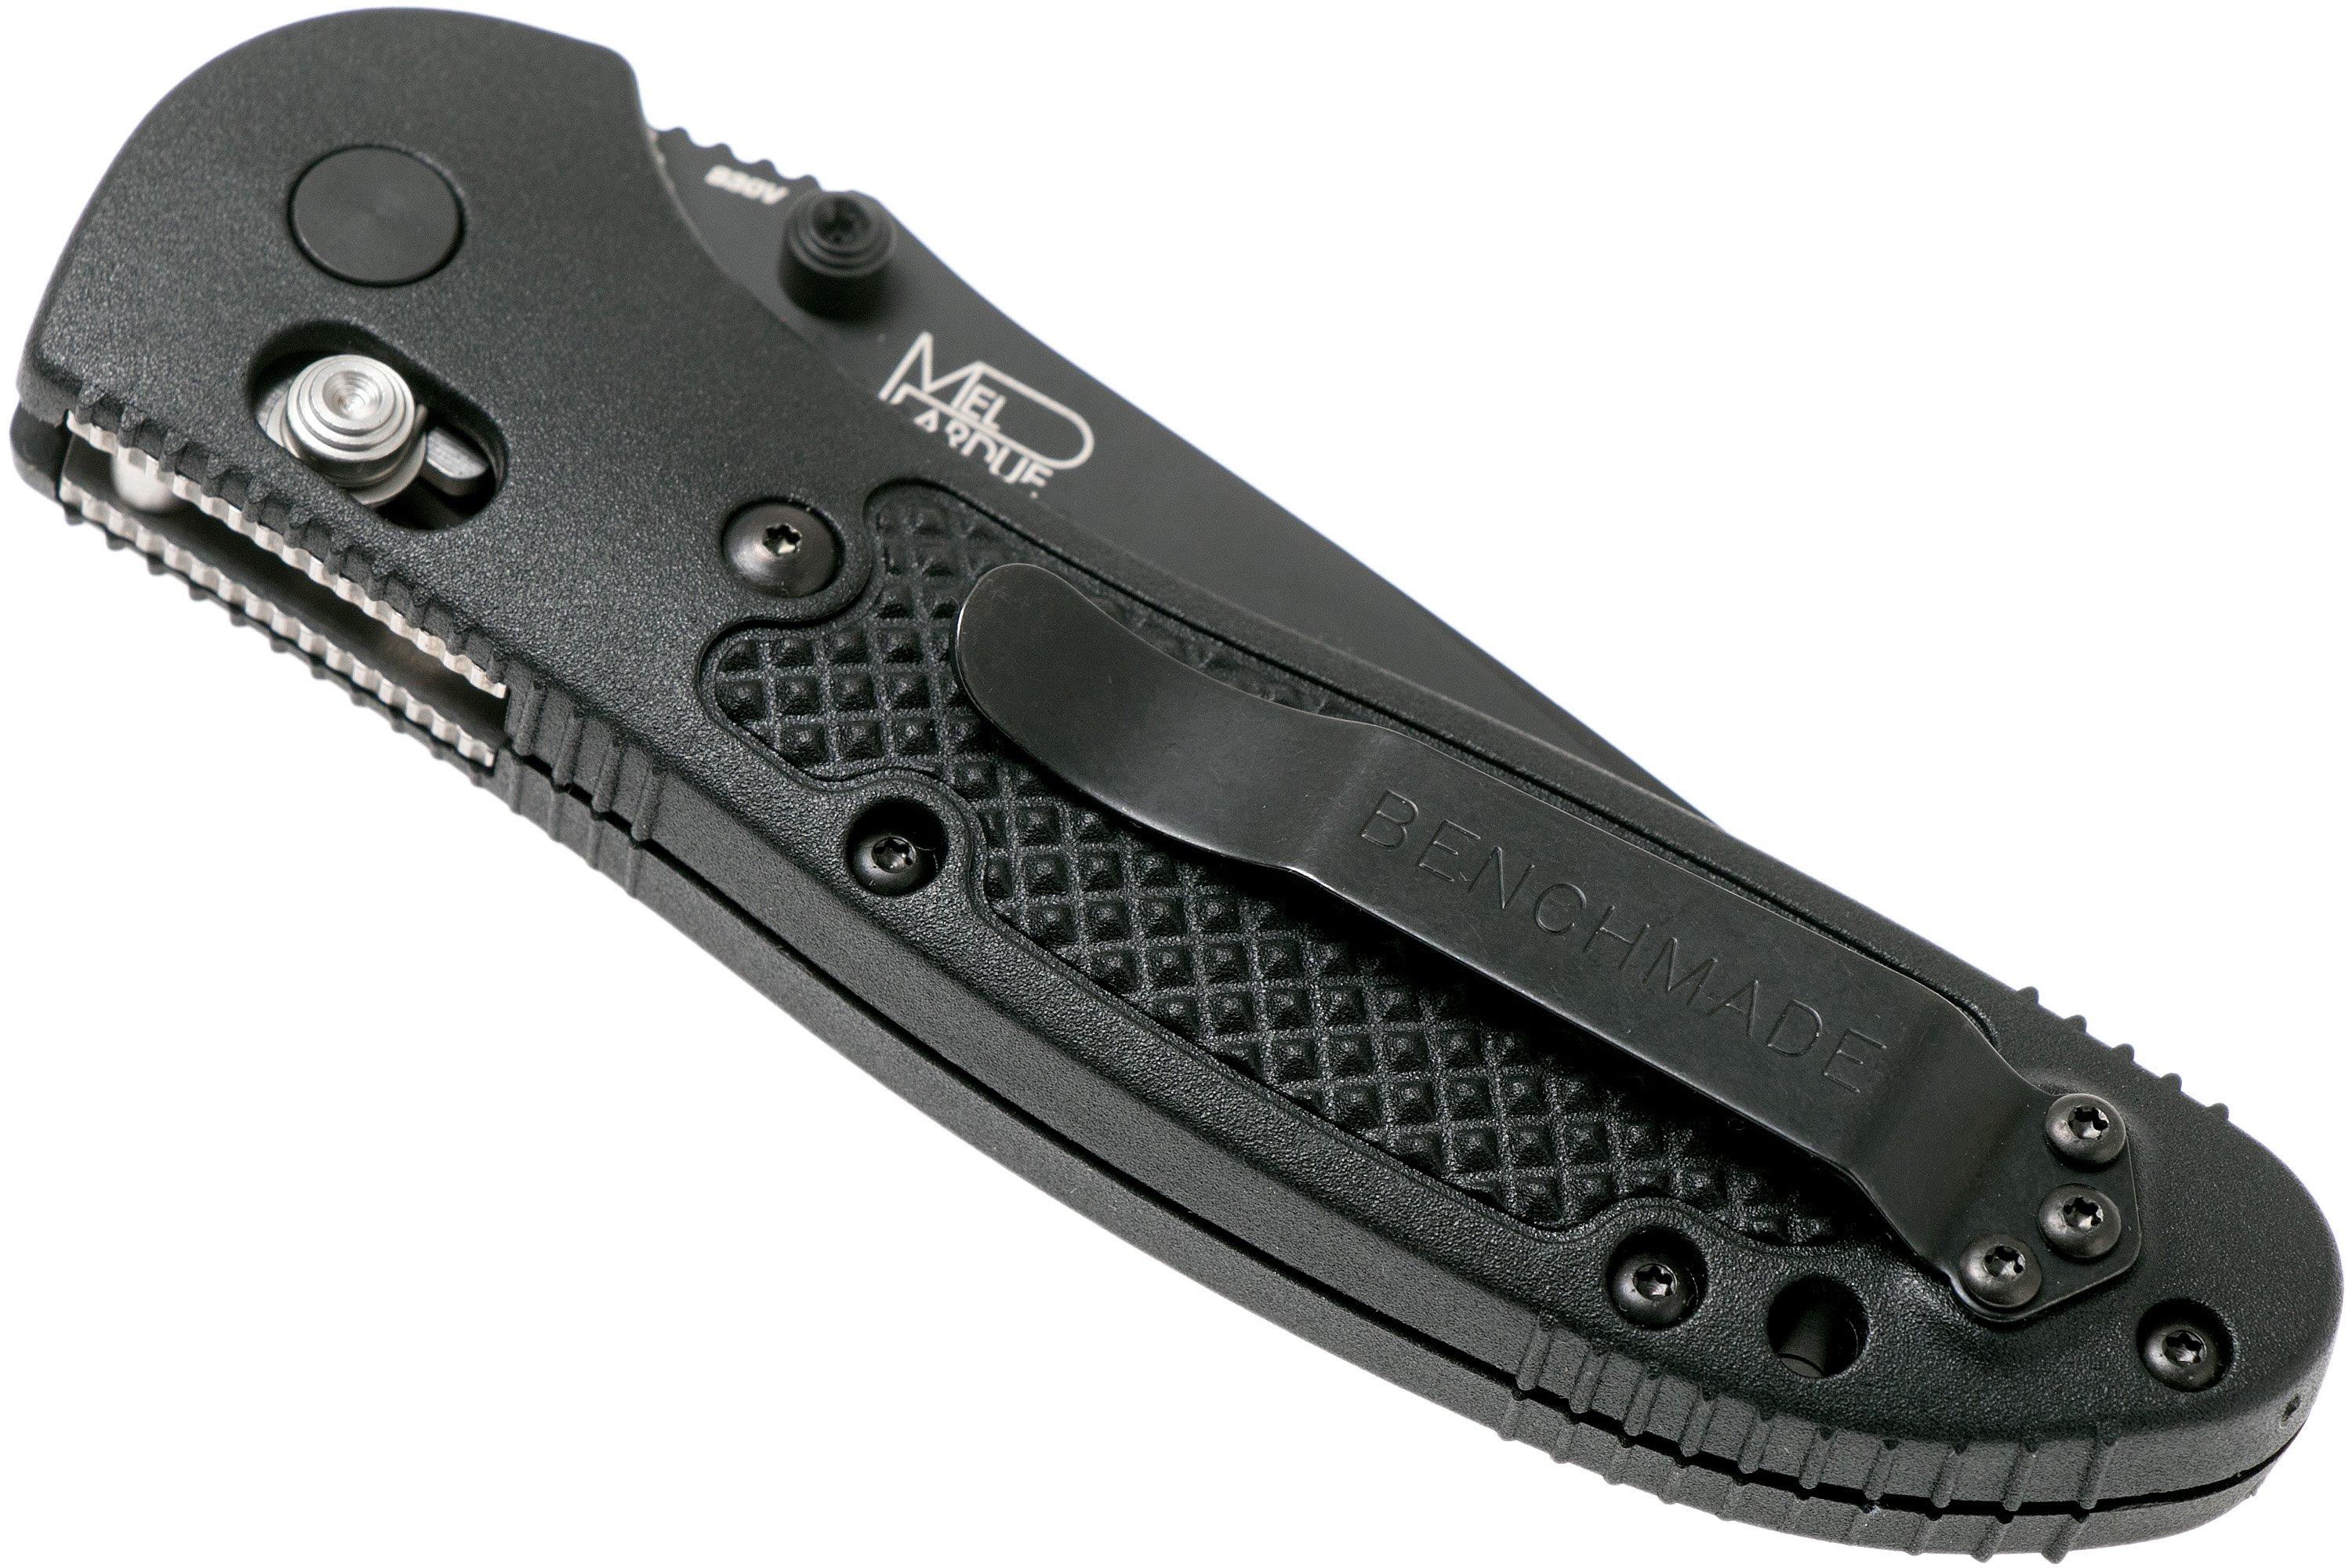 アウトドア その他 Benchmade Griptilian 551BK-S30V pocket knife, Mel Pardue design 